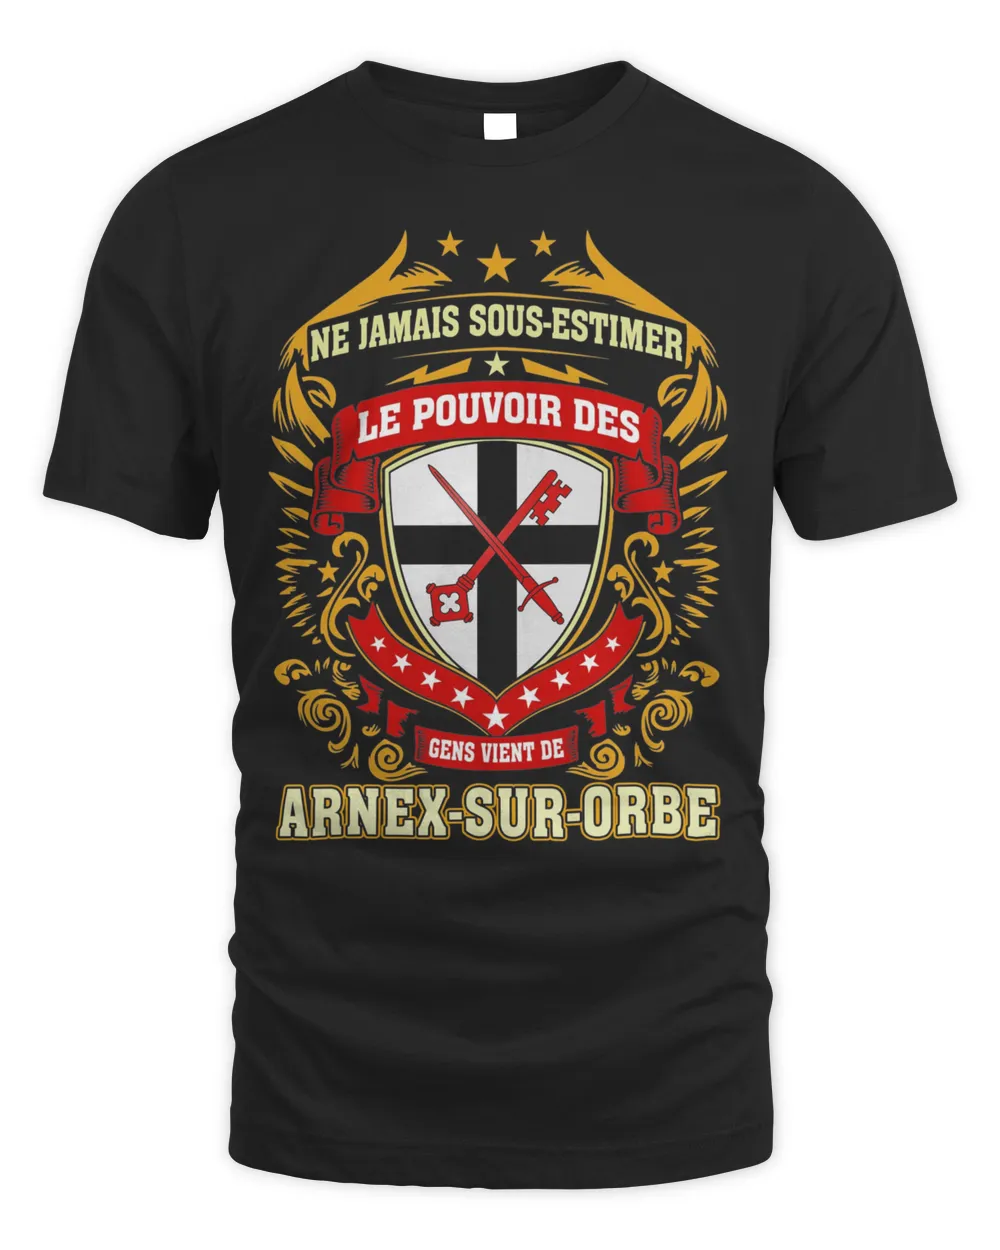 Ne Jamais Sous-estimer Le Pouvoir Des Gens Vient De Arnex-Sur-Orbe Shirt